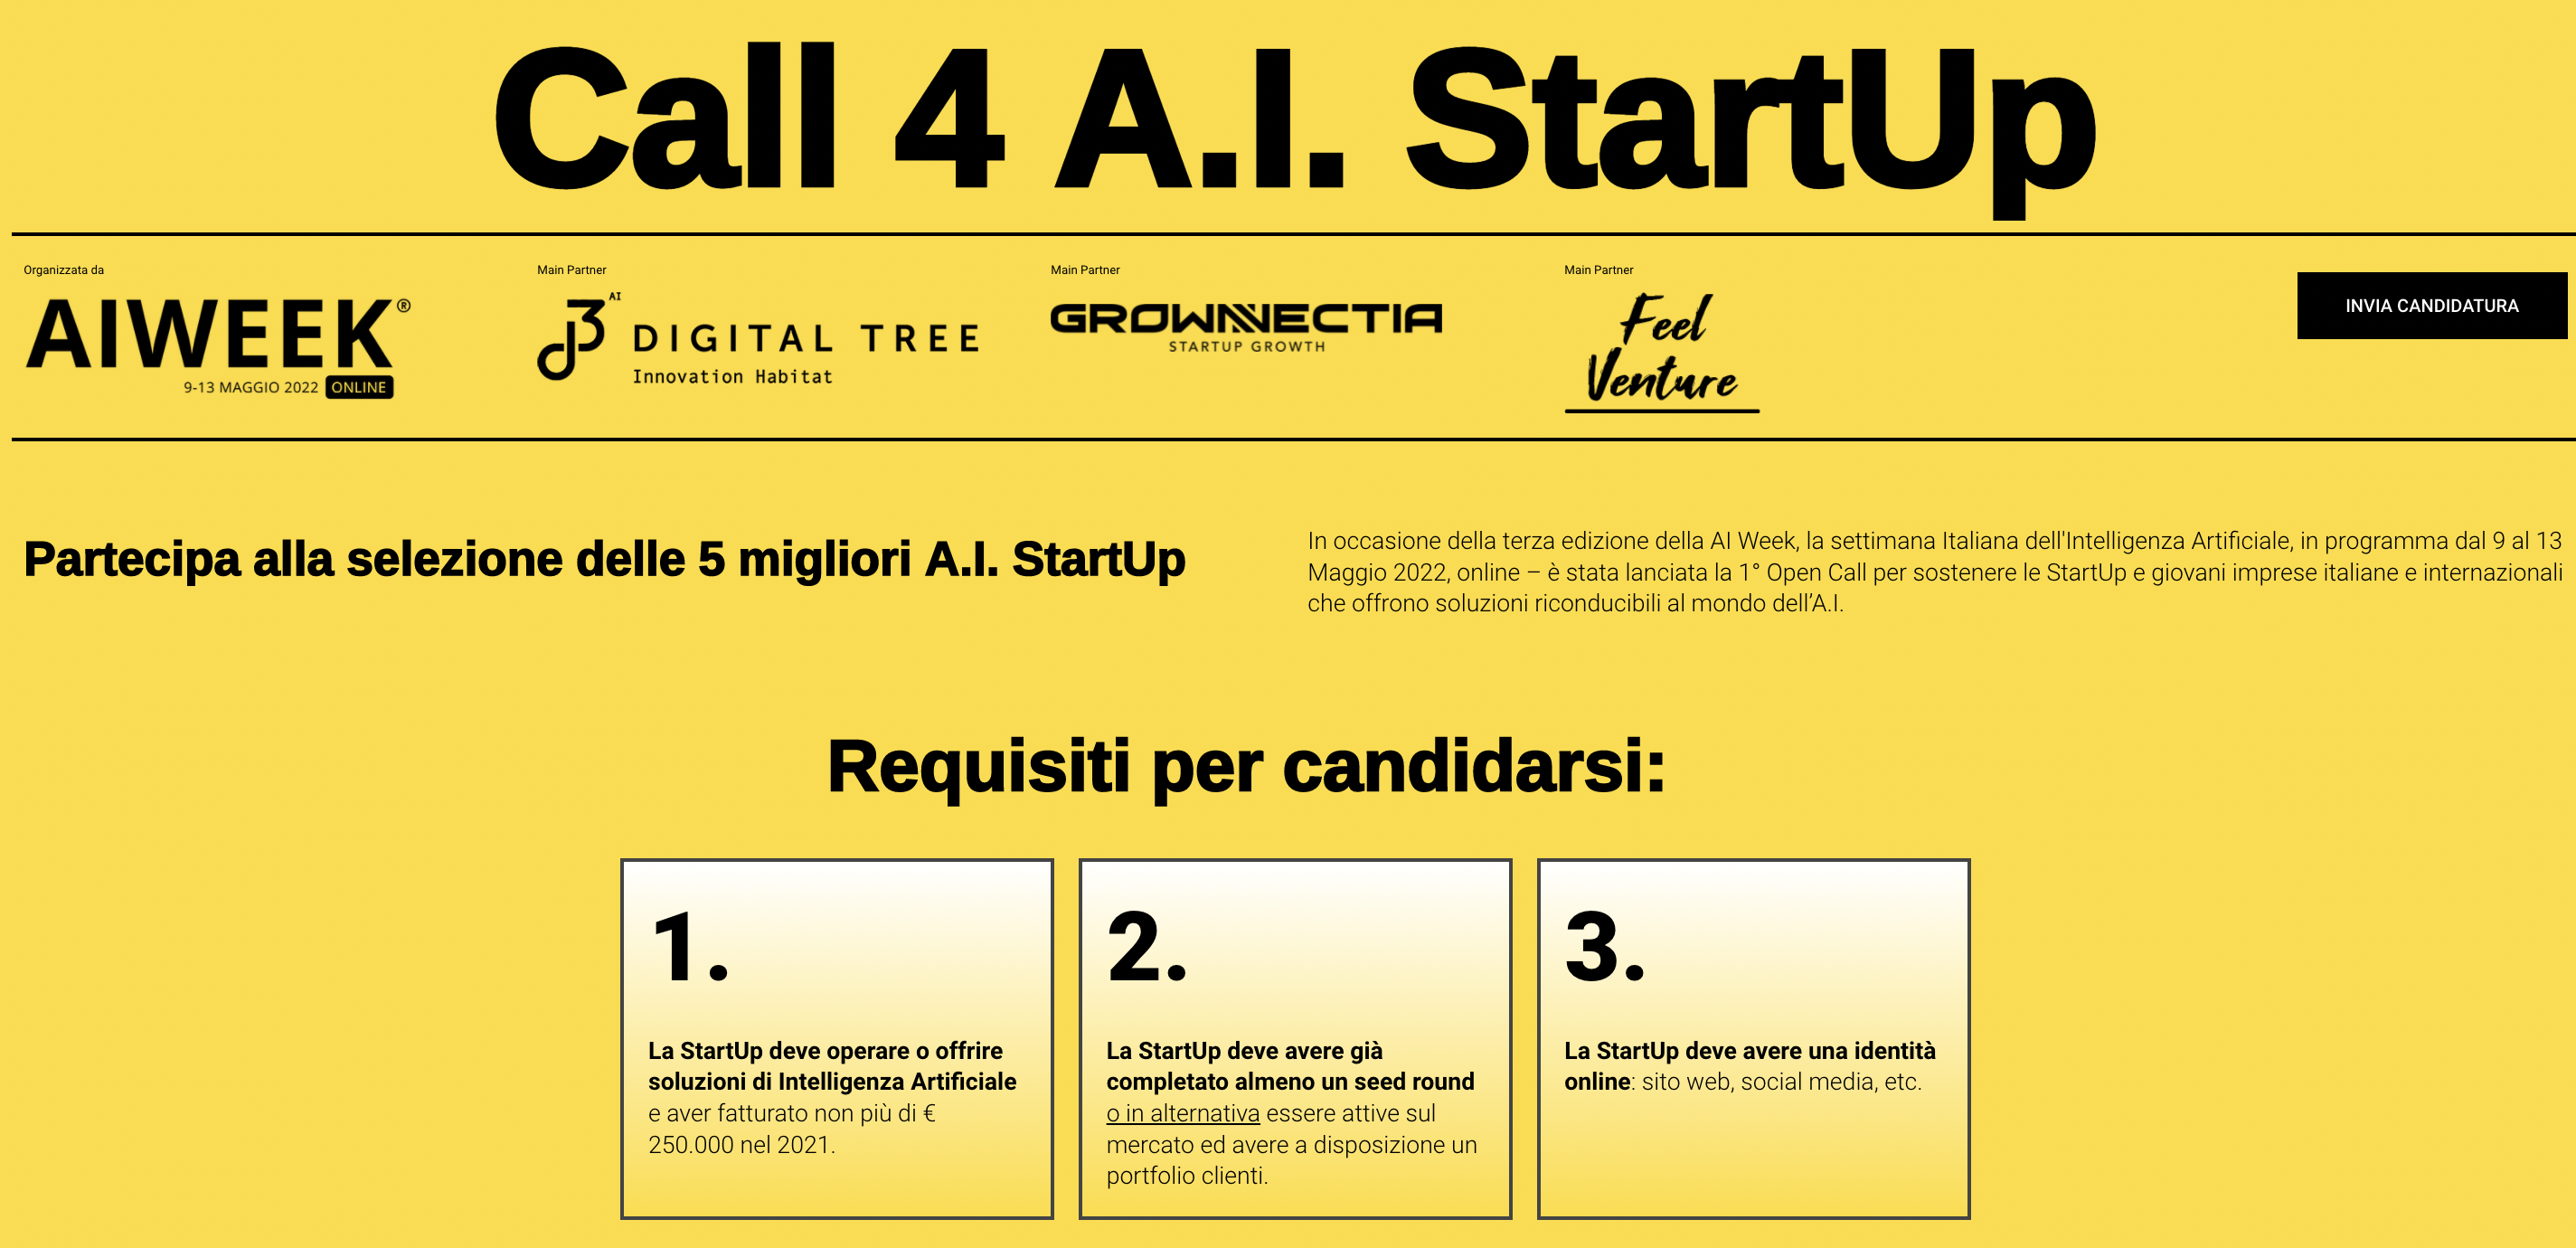 3 požiadavky na prihlásenie sa do „Call 4 AI Startup“ v rámci ročníka 2022 „AI Week“